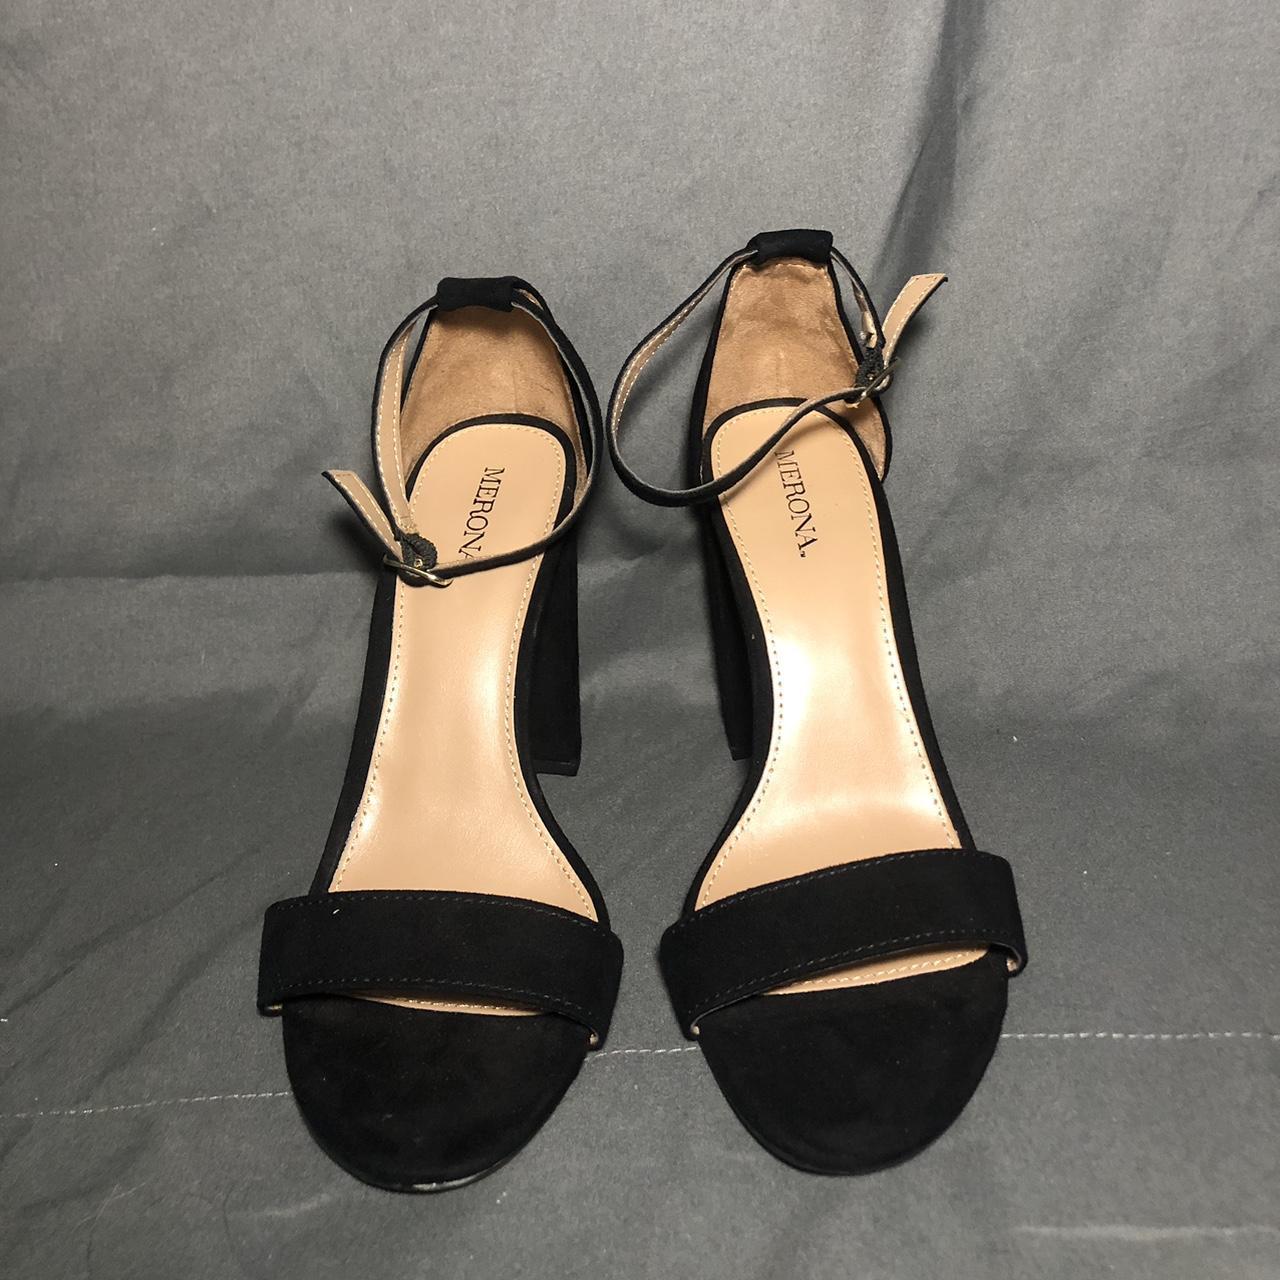 Merona brand black heels. Size 7, excellent... - Depop